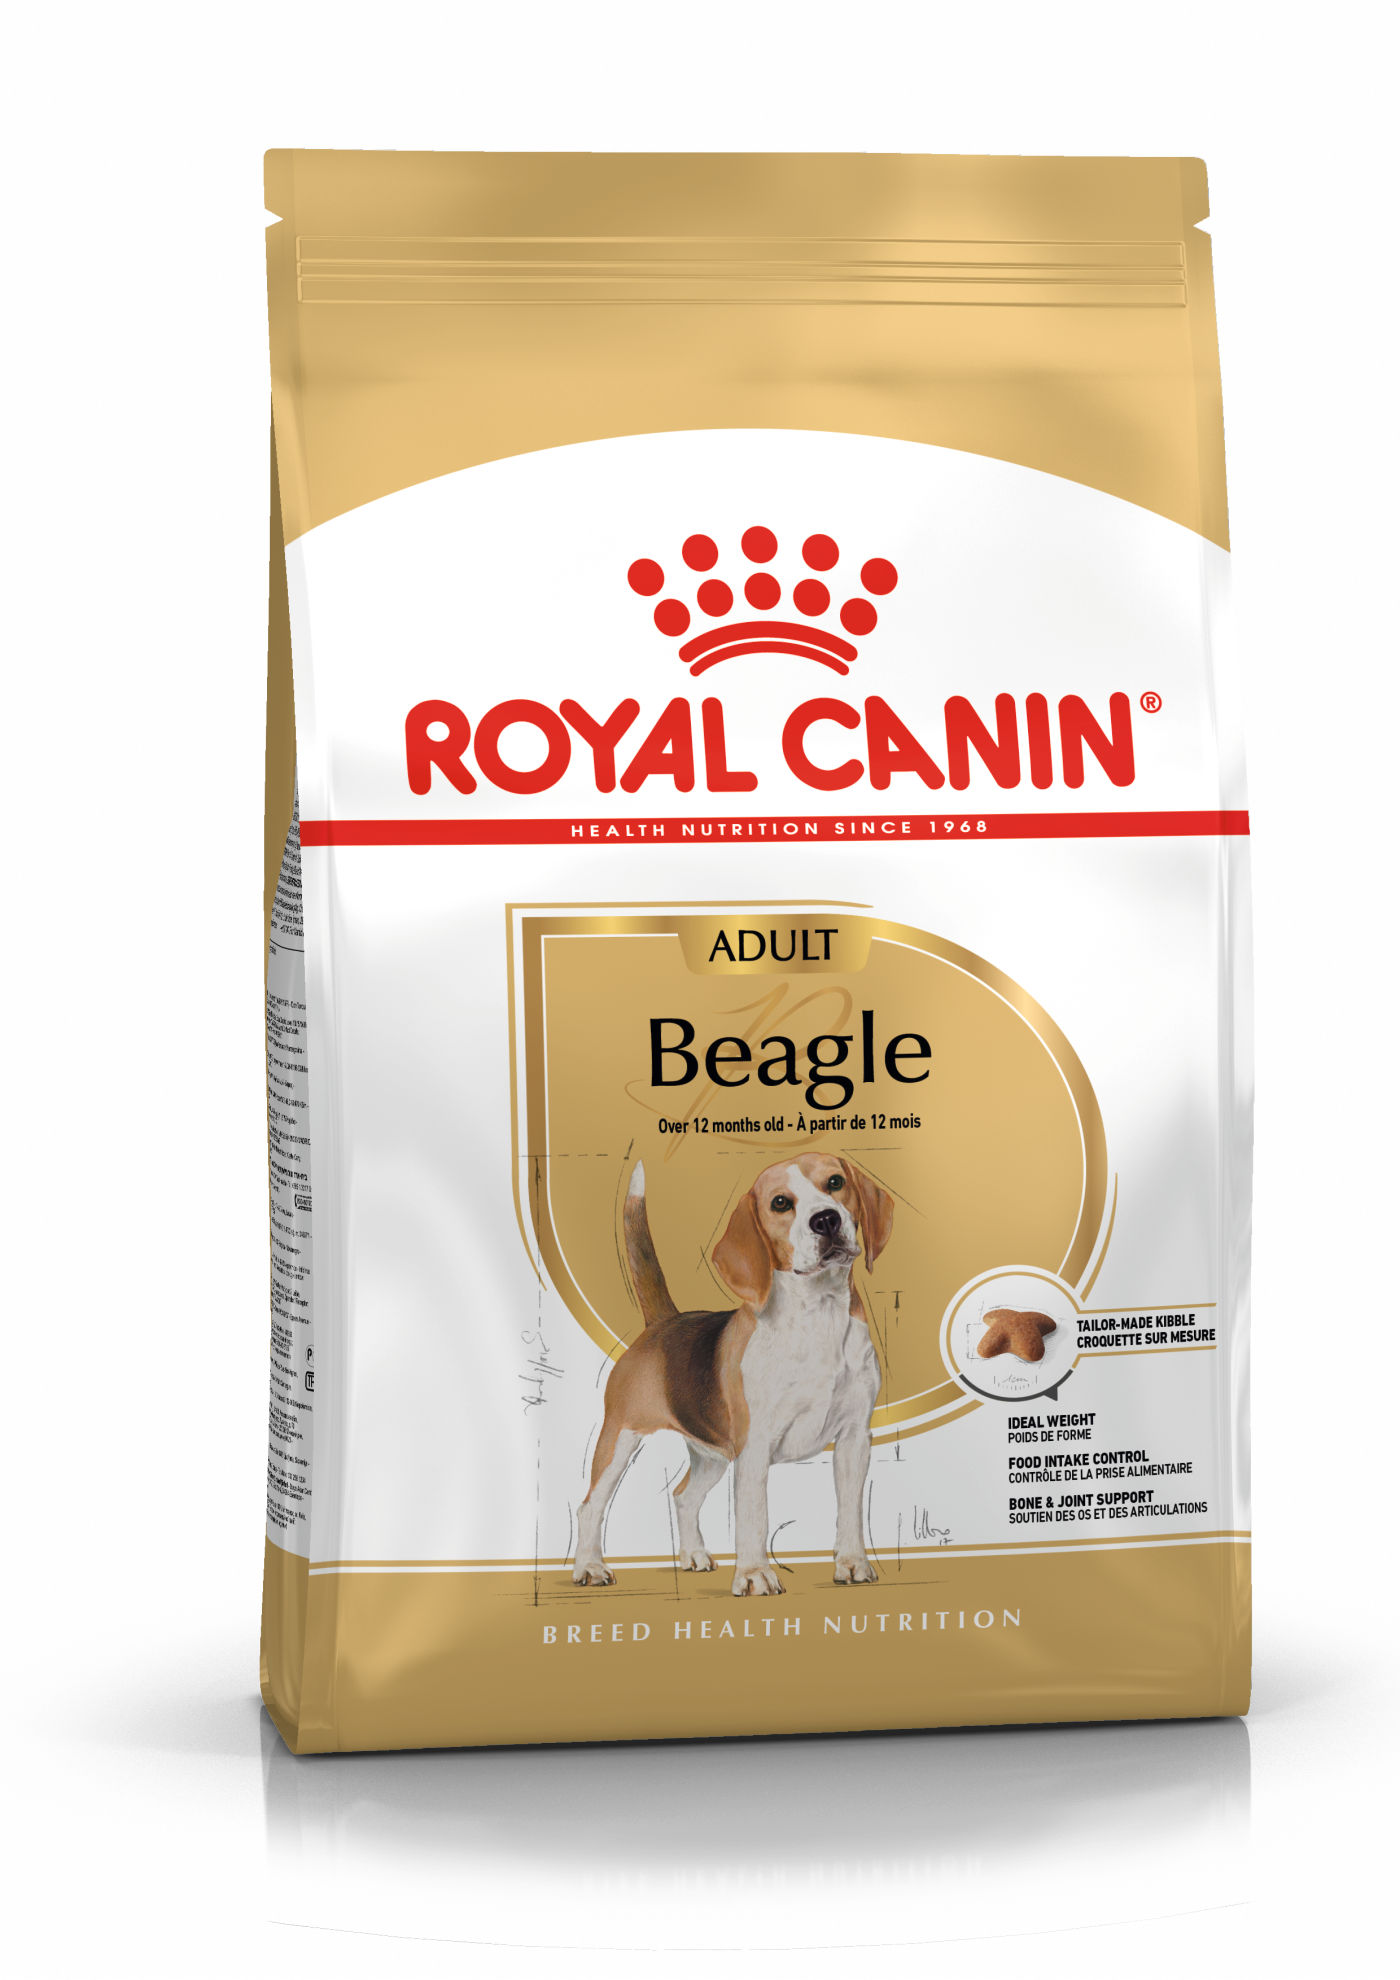 ad-beagle-packshot-bhn18